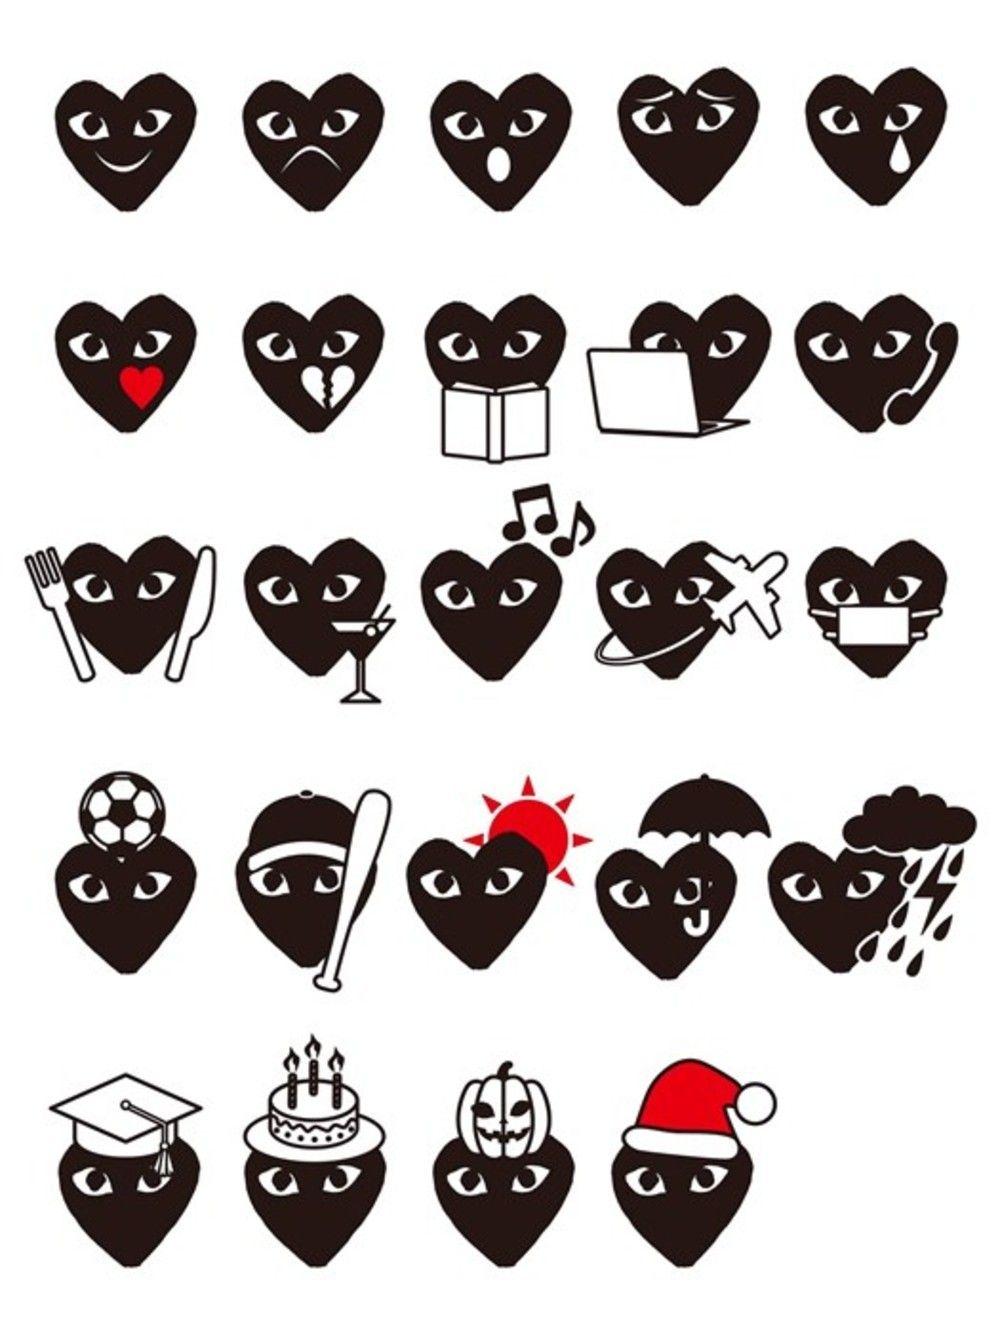 Comme des Garçons lanceert eigen emoji's gebaseerd op diens befaamde